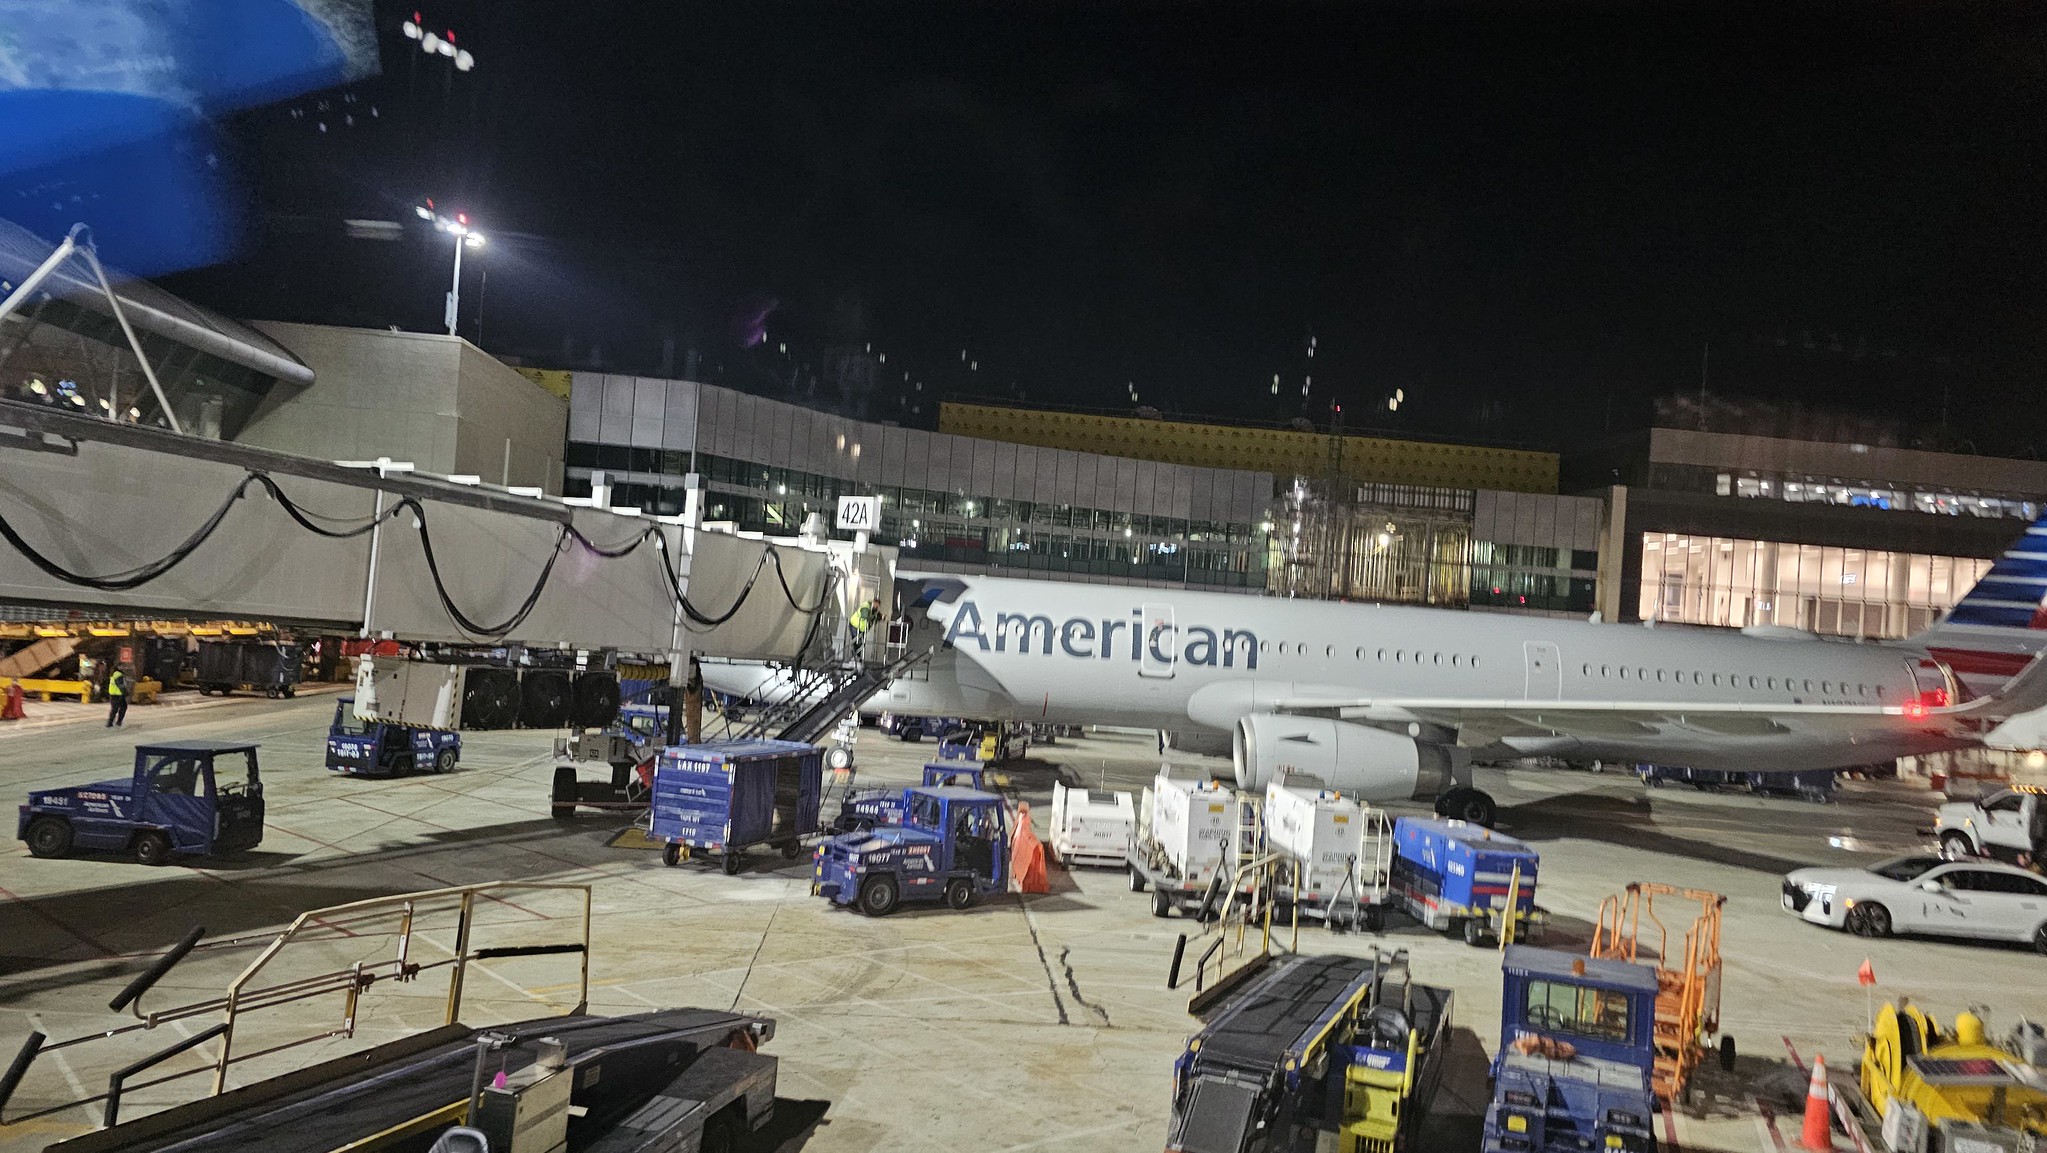 An AA aircraft sat at Gate 42A at LAX T4